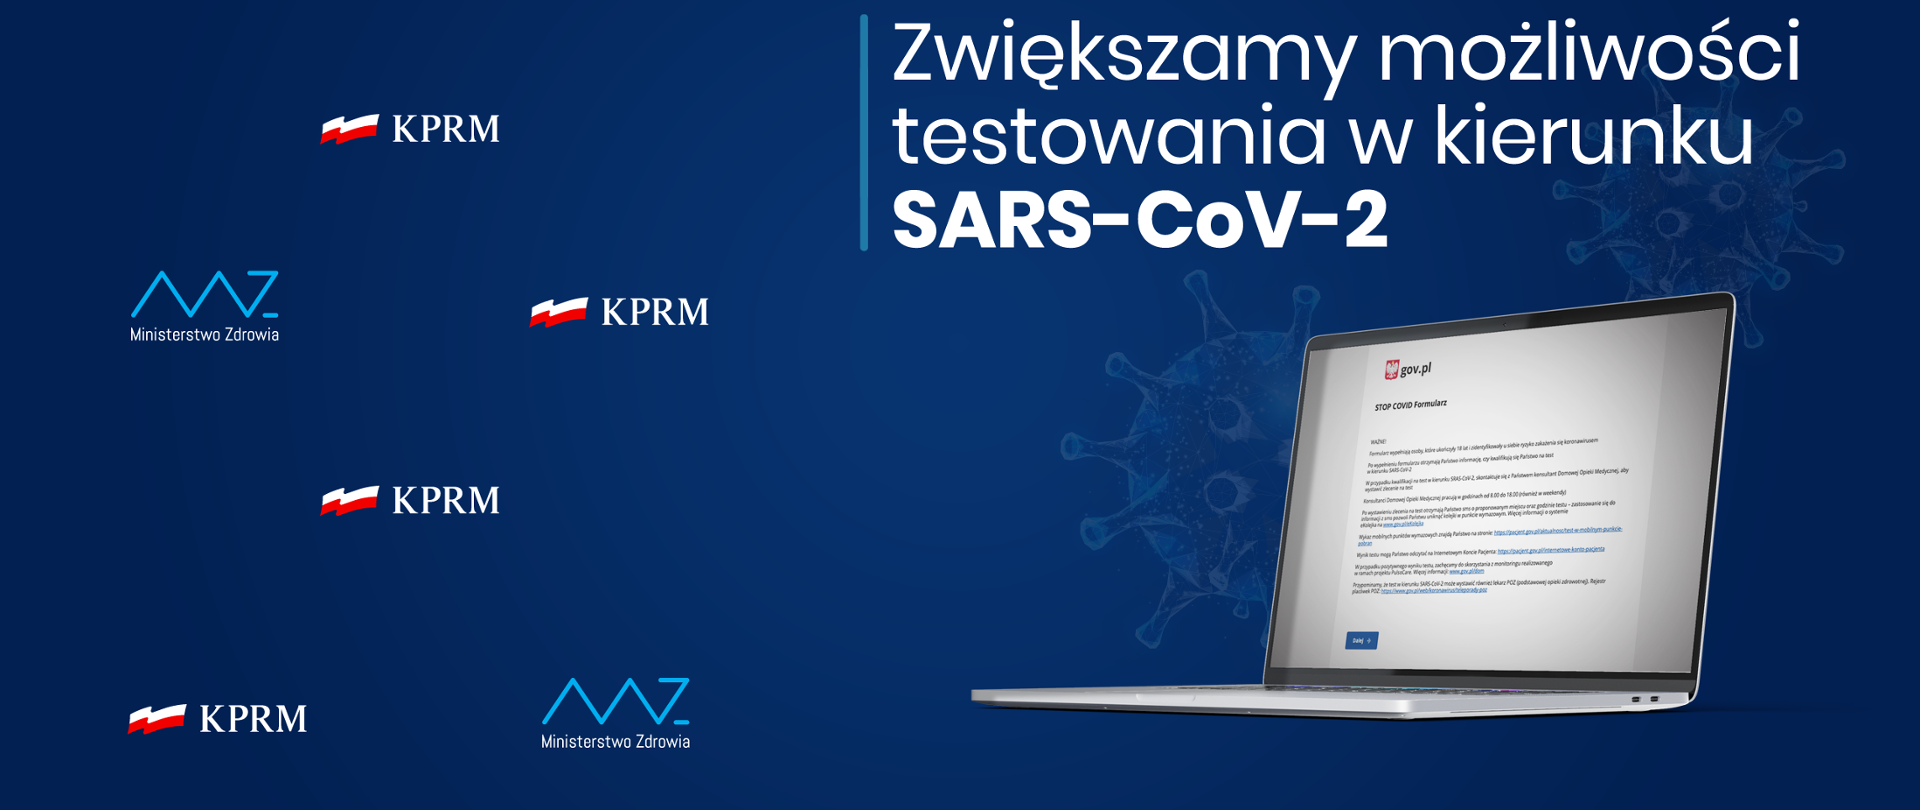 Grafika: na granatowym tle logo KPRM i Ministerstwa Zdrowia, a także napis: "Zwiększamy możliwości testowania w kierunku SARS-Cov-2". Pod napisem otwarty laptop z wyświetlonym formularzem STOP COVID